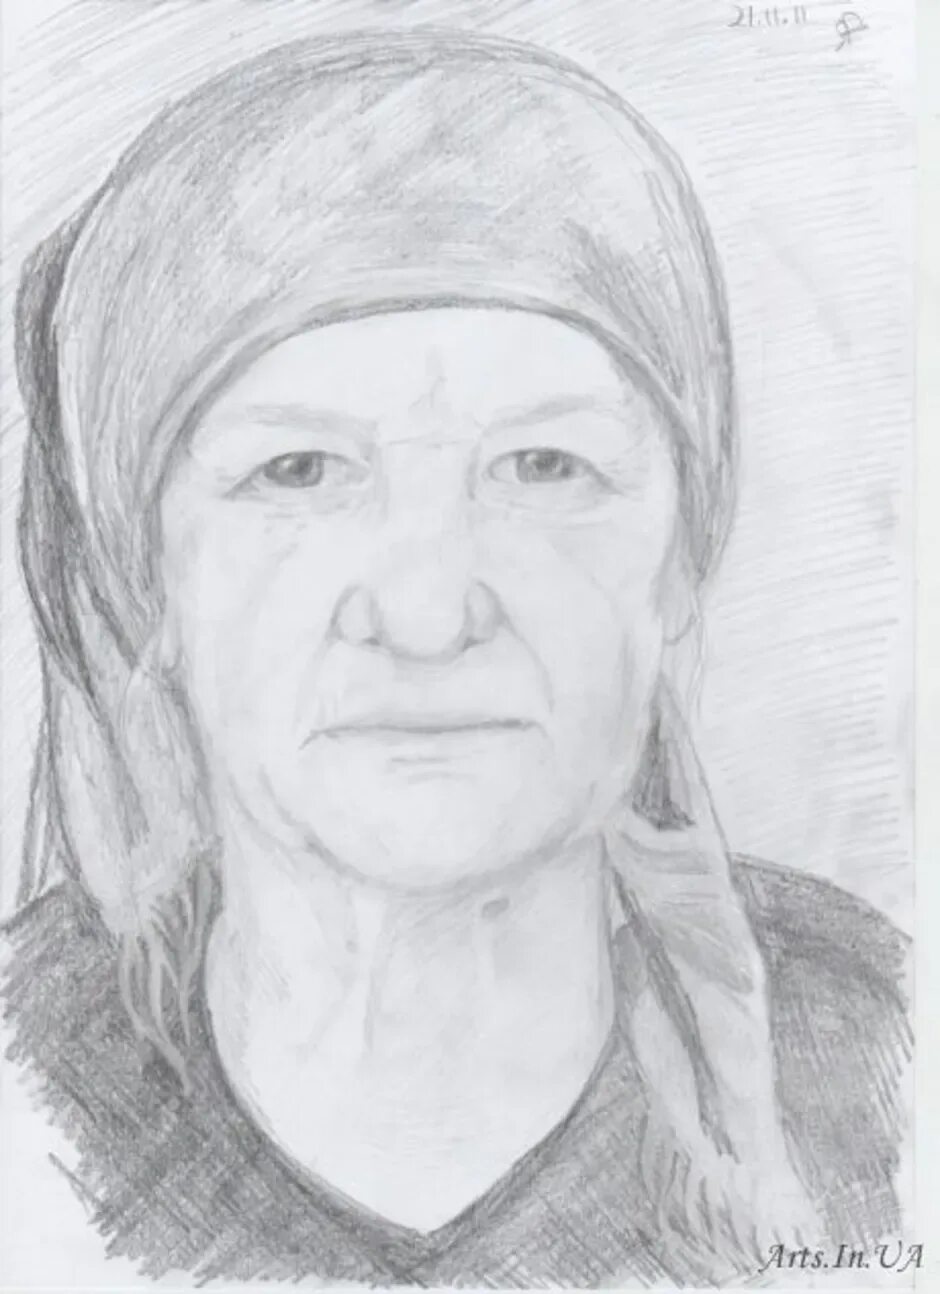 Бабушка 4 легкого. Портрет бабушки карандашом. Лёгкий портет пожилого человека. Портрет пожилого человека. Портрет пожилого человека карандашом.